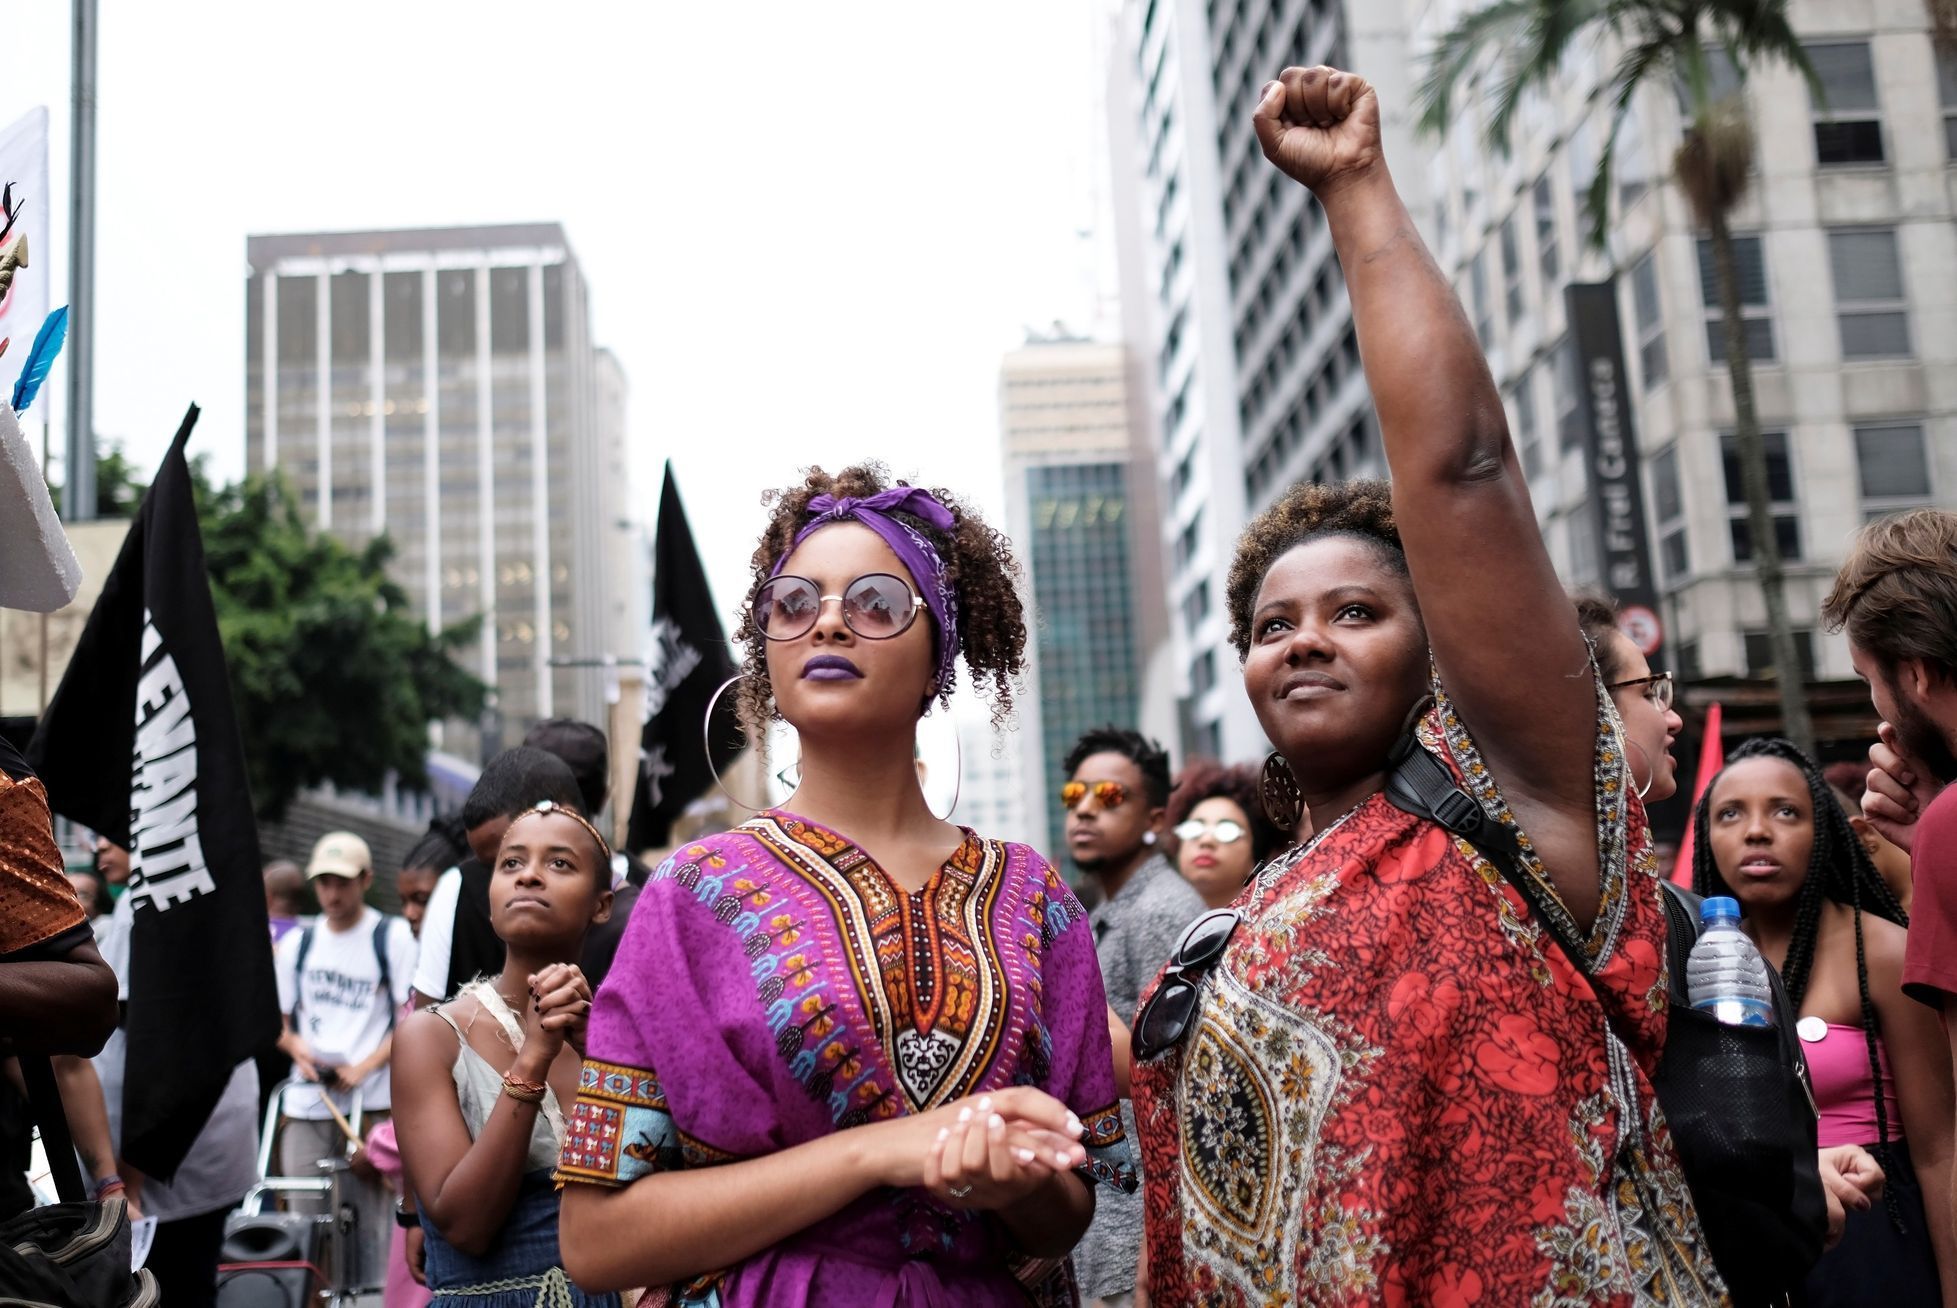 Mezinárodní den žen ve světě - Sao Paulo, Brazílie